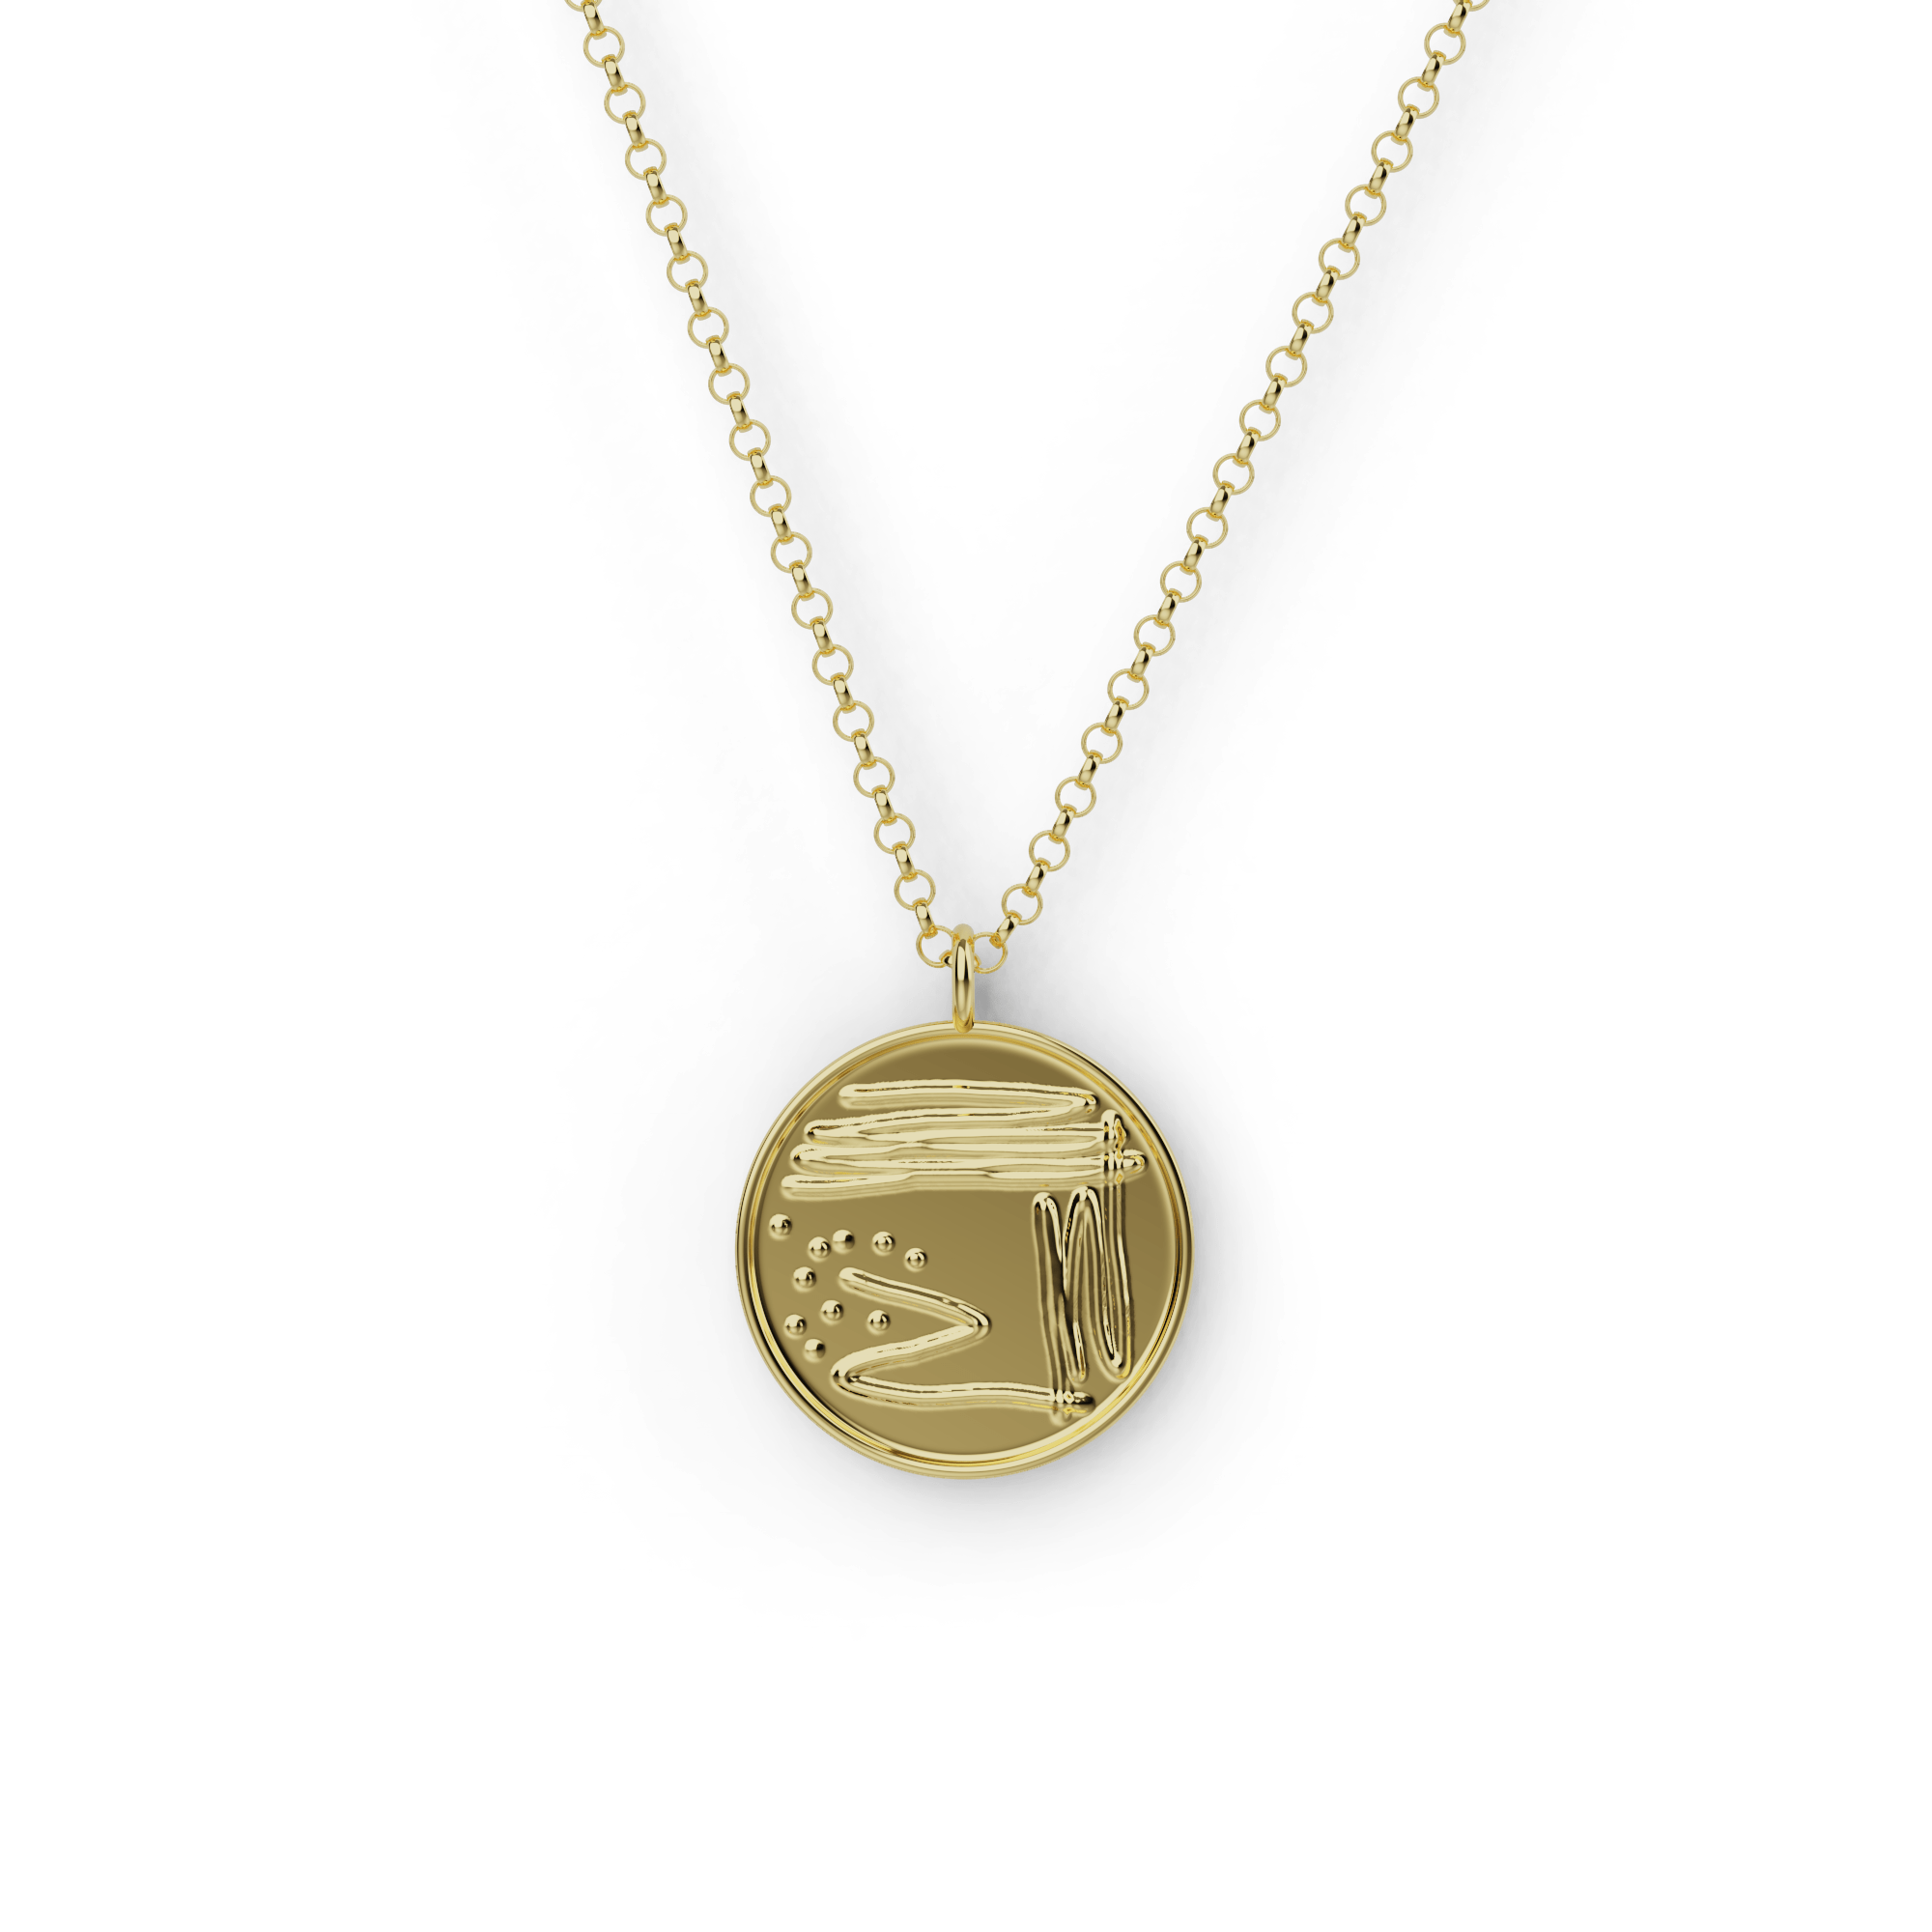 petri dish necklace | gold vermeil